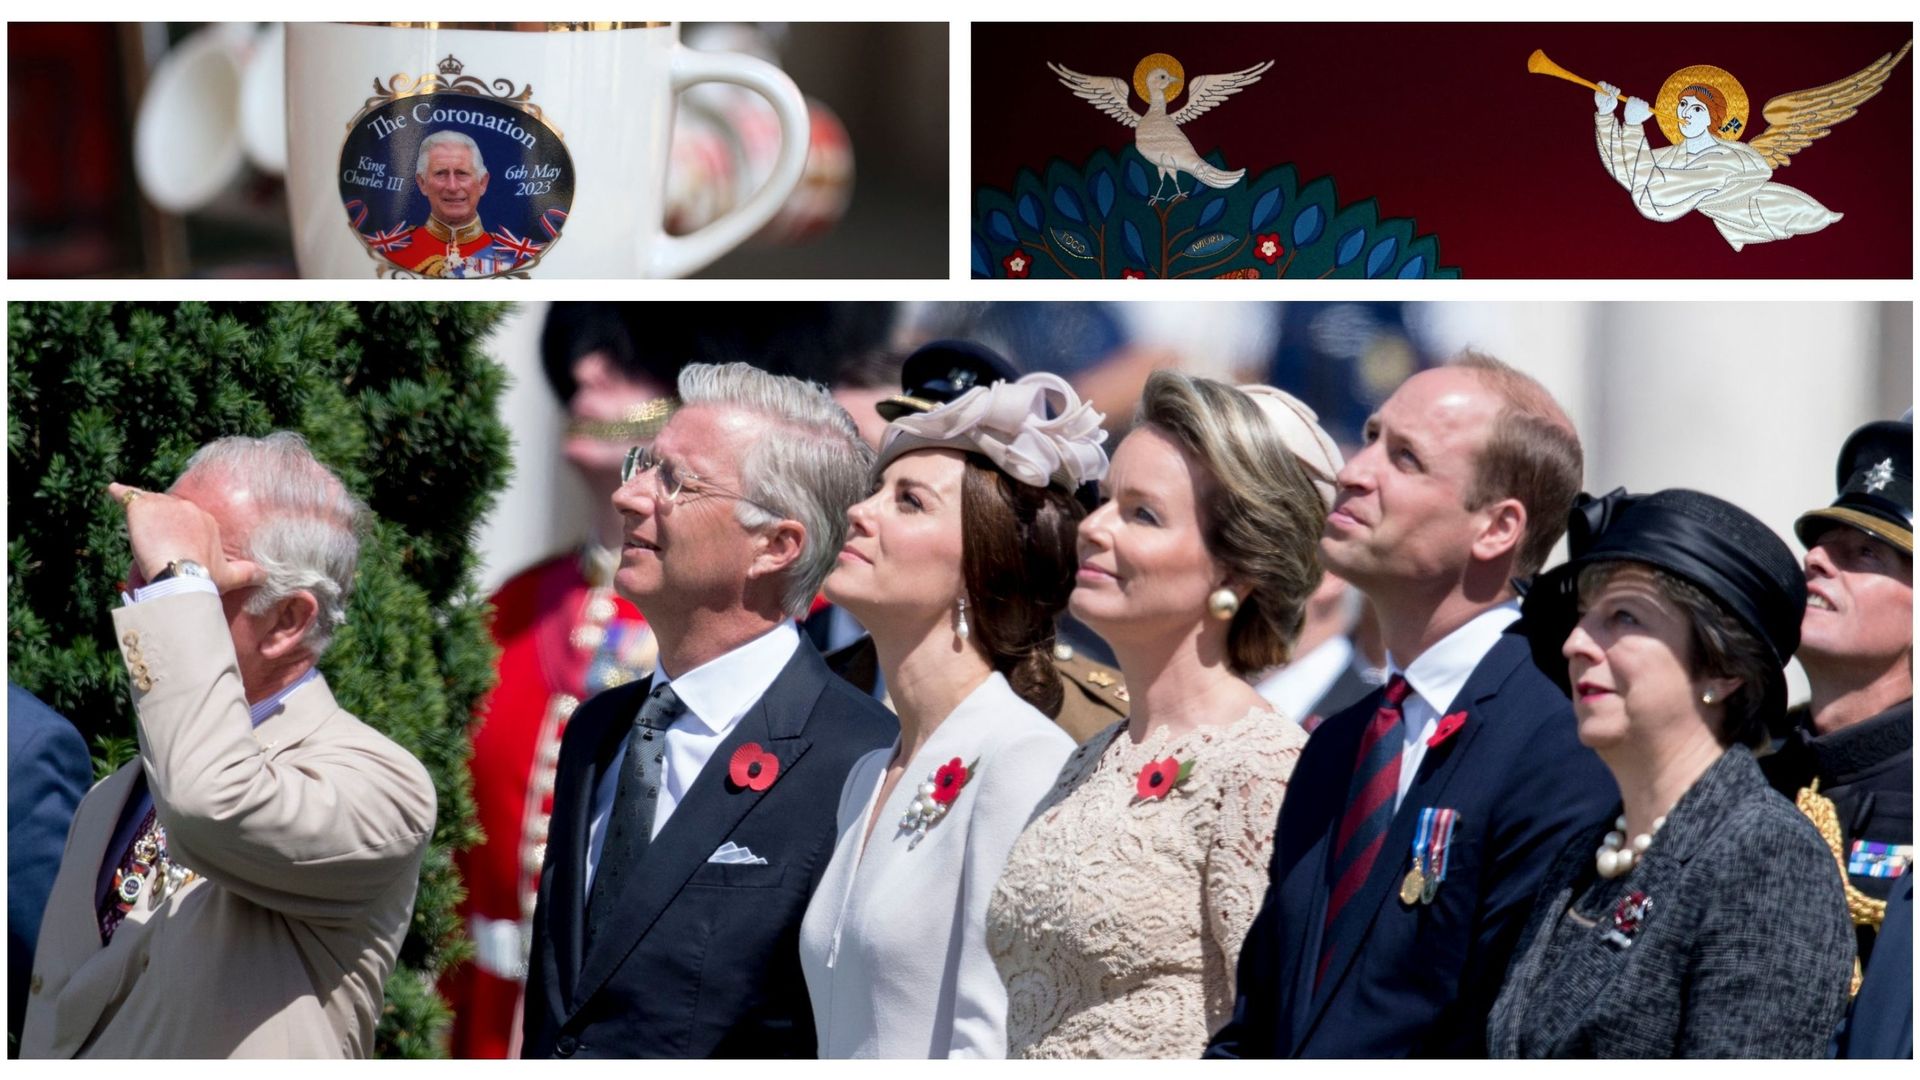 Les familles royales britannique et belge à Passendale en 2017 et images d’illustration